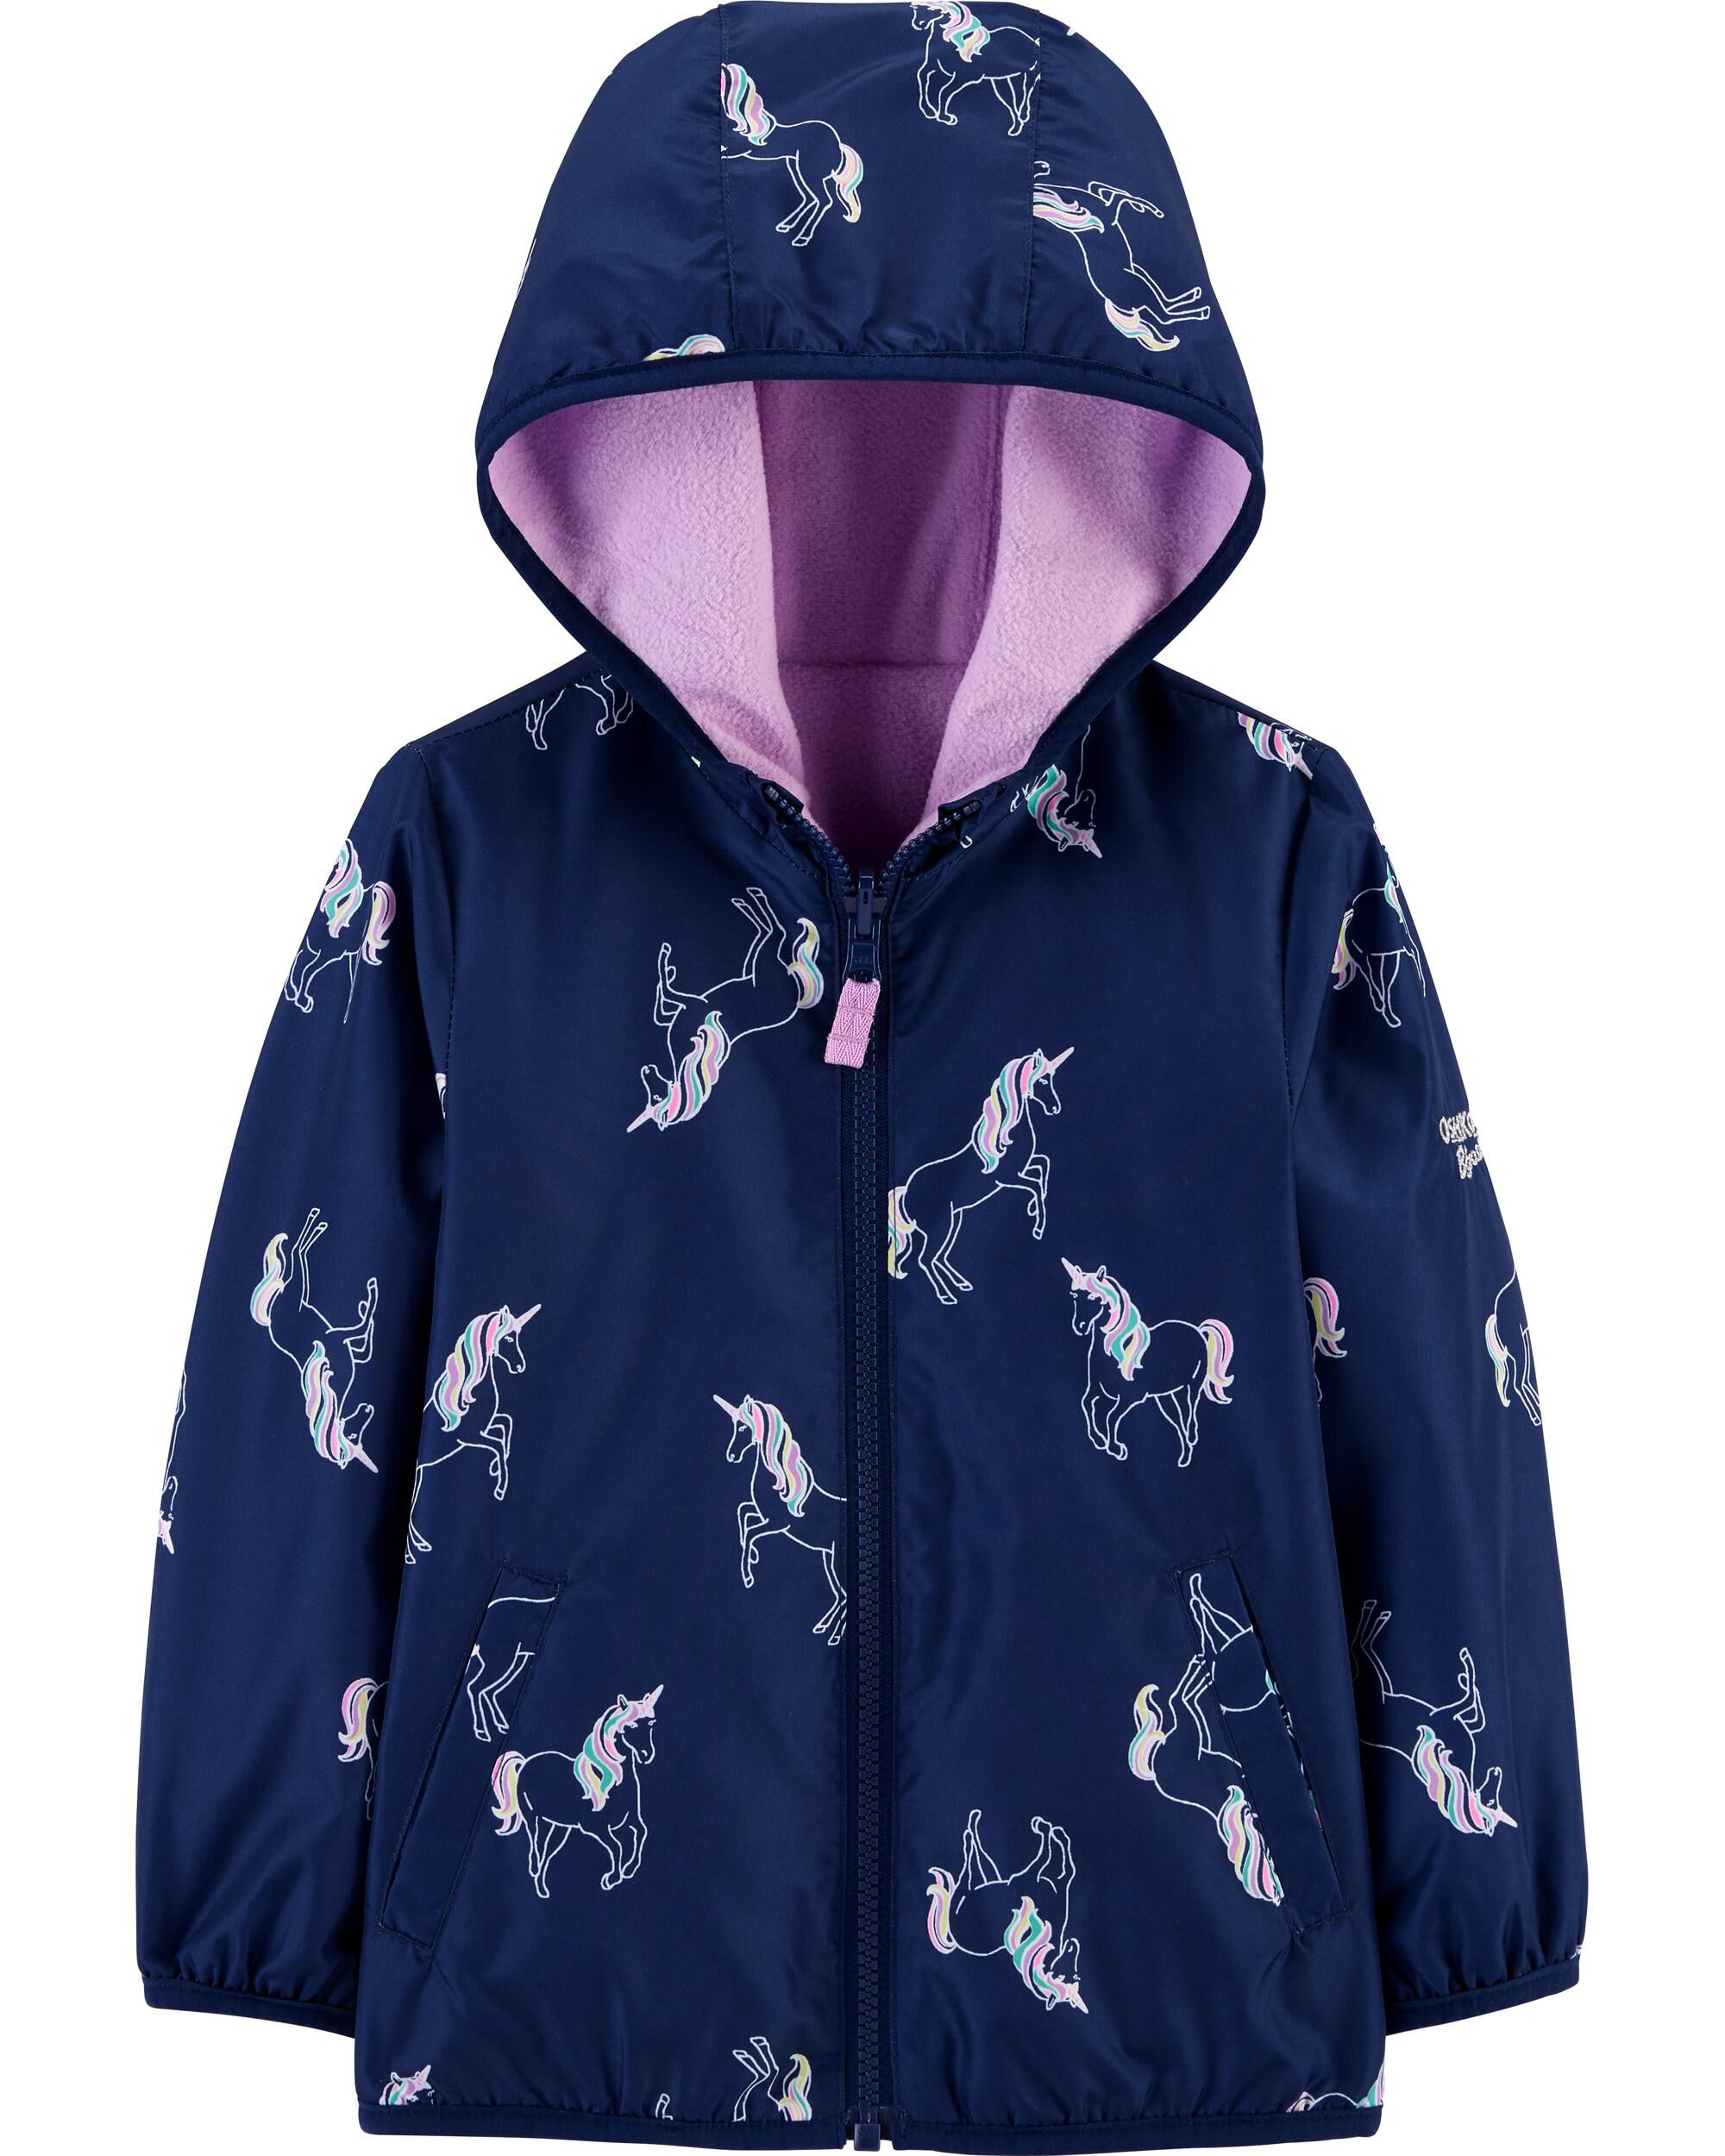 carter's unicorn jacket